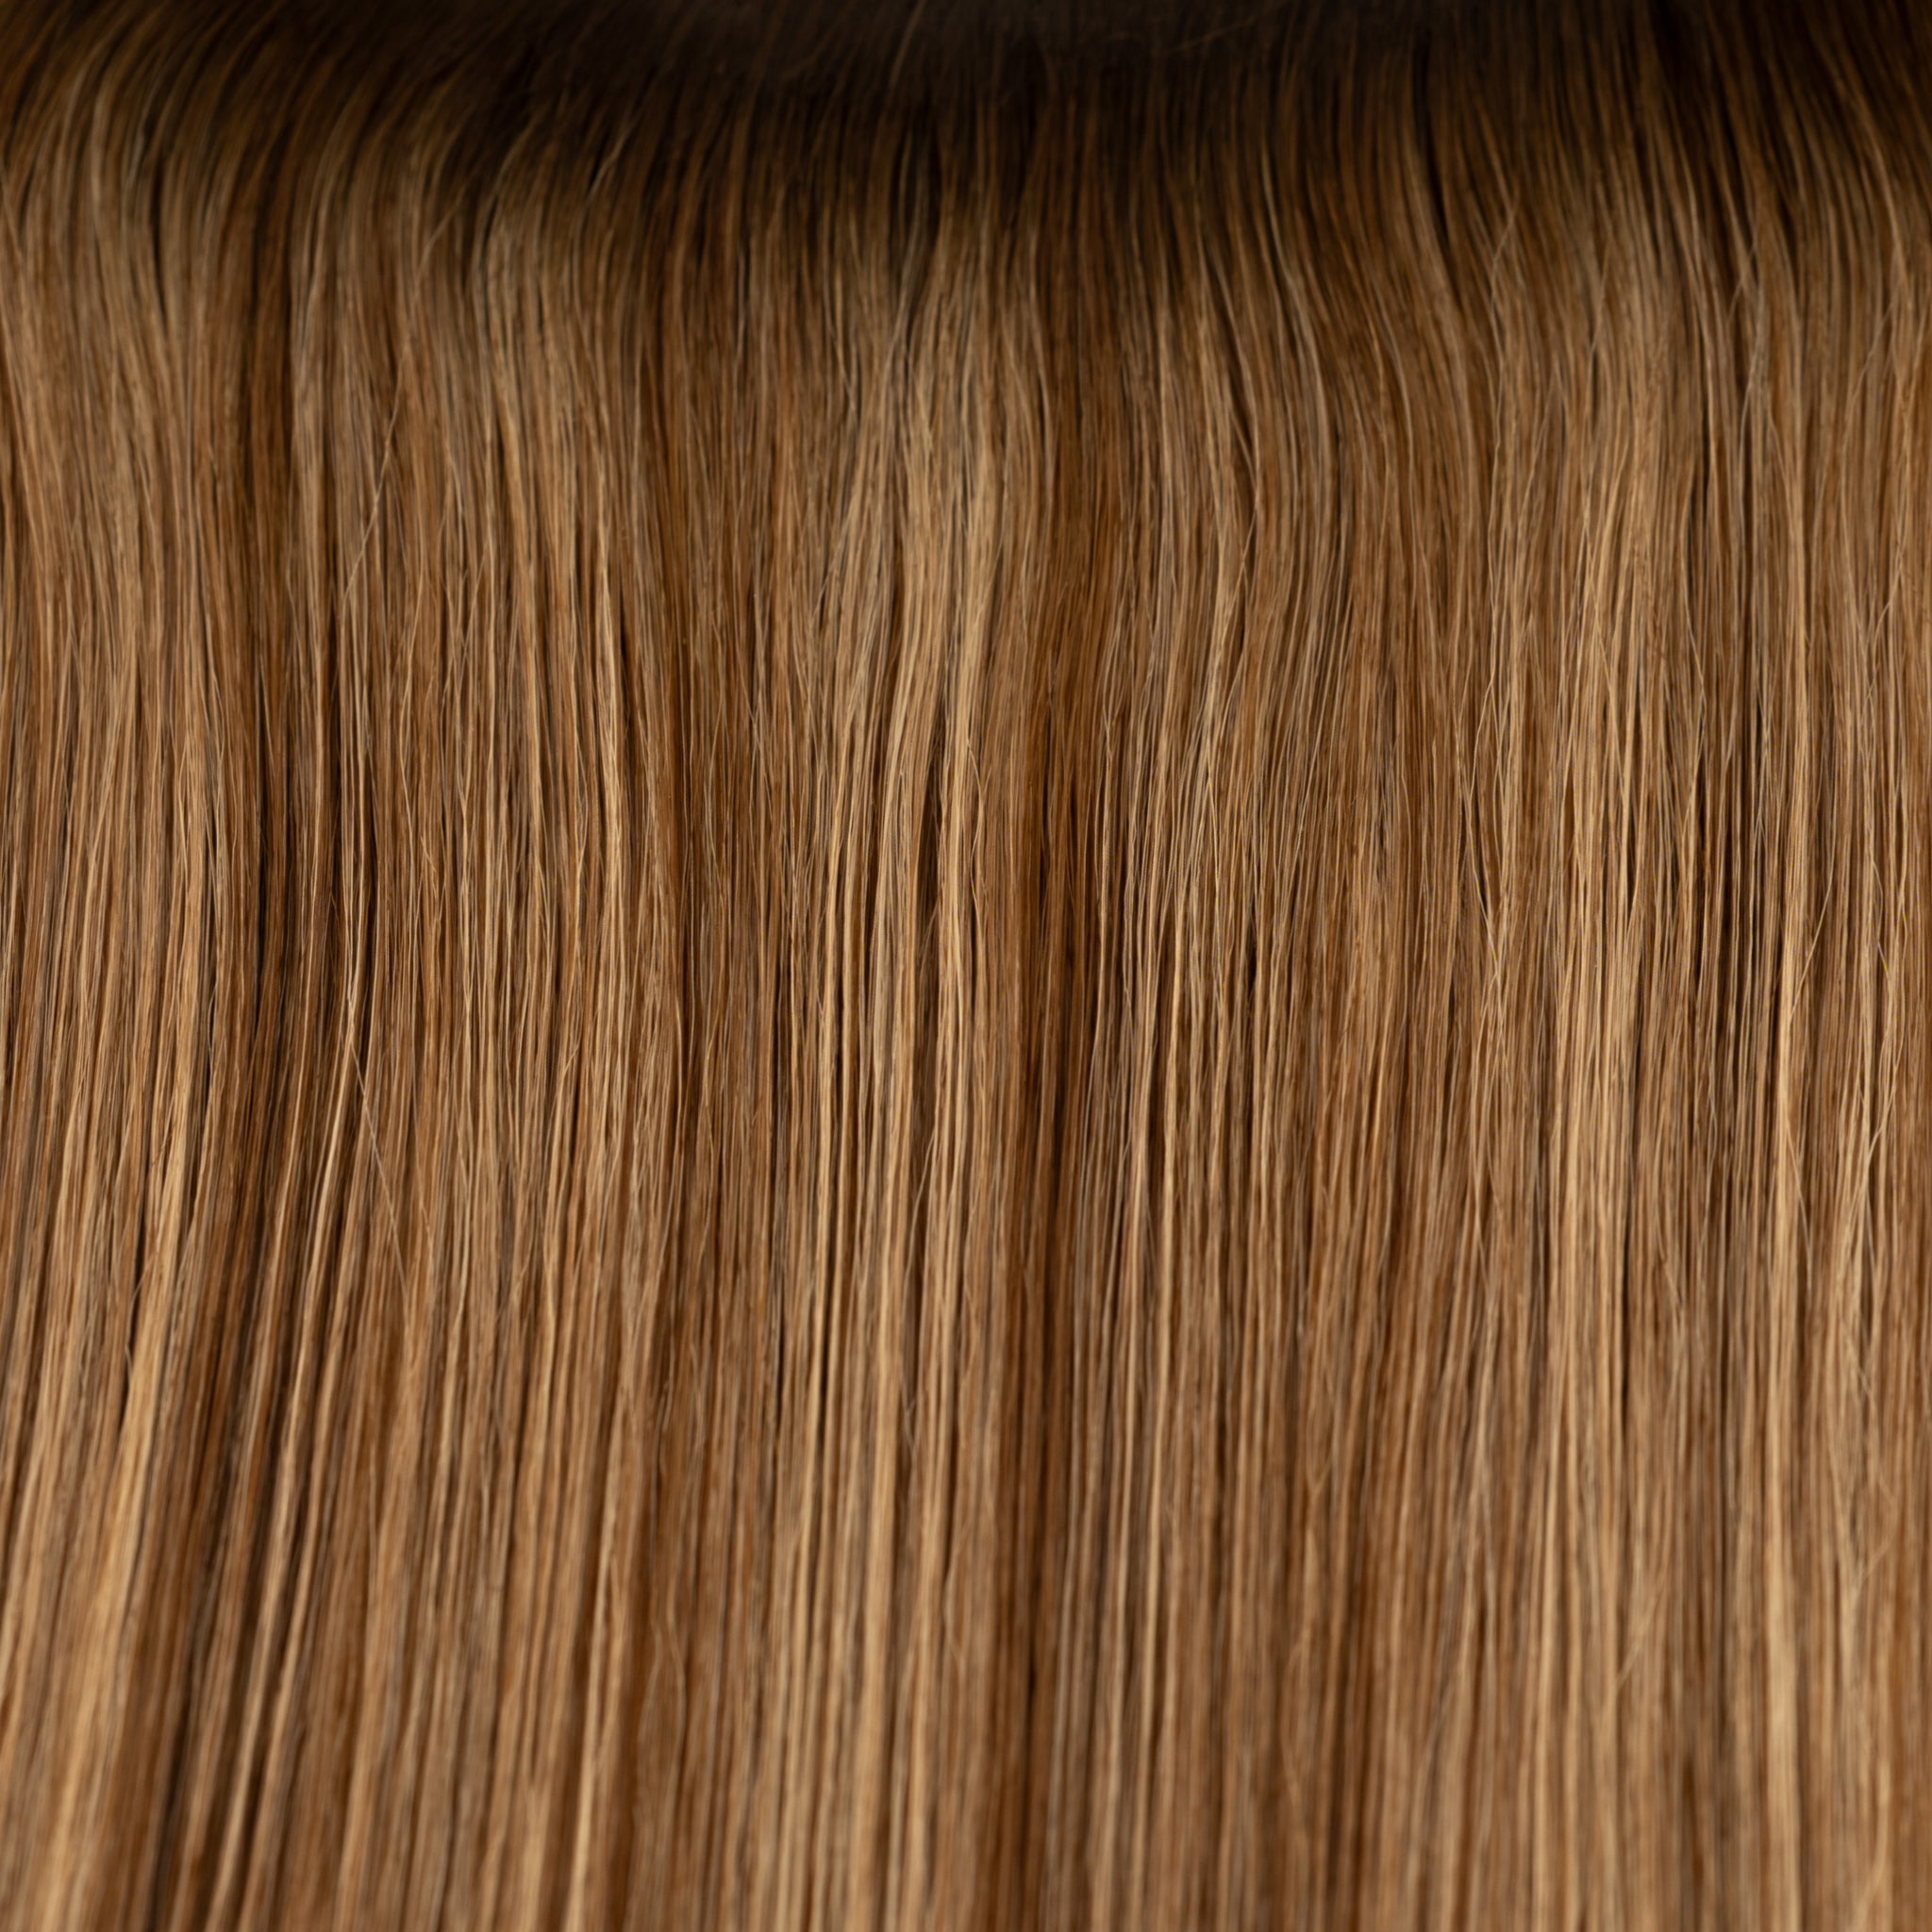 Dark Brown Beige Blonde 'Como' Root Tap Blend Sample Clip In Hair Extension